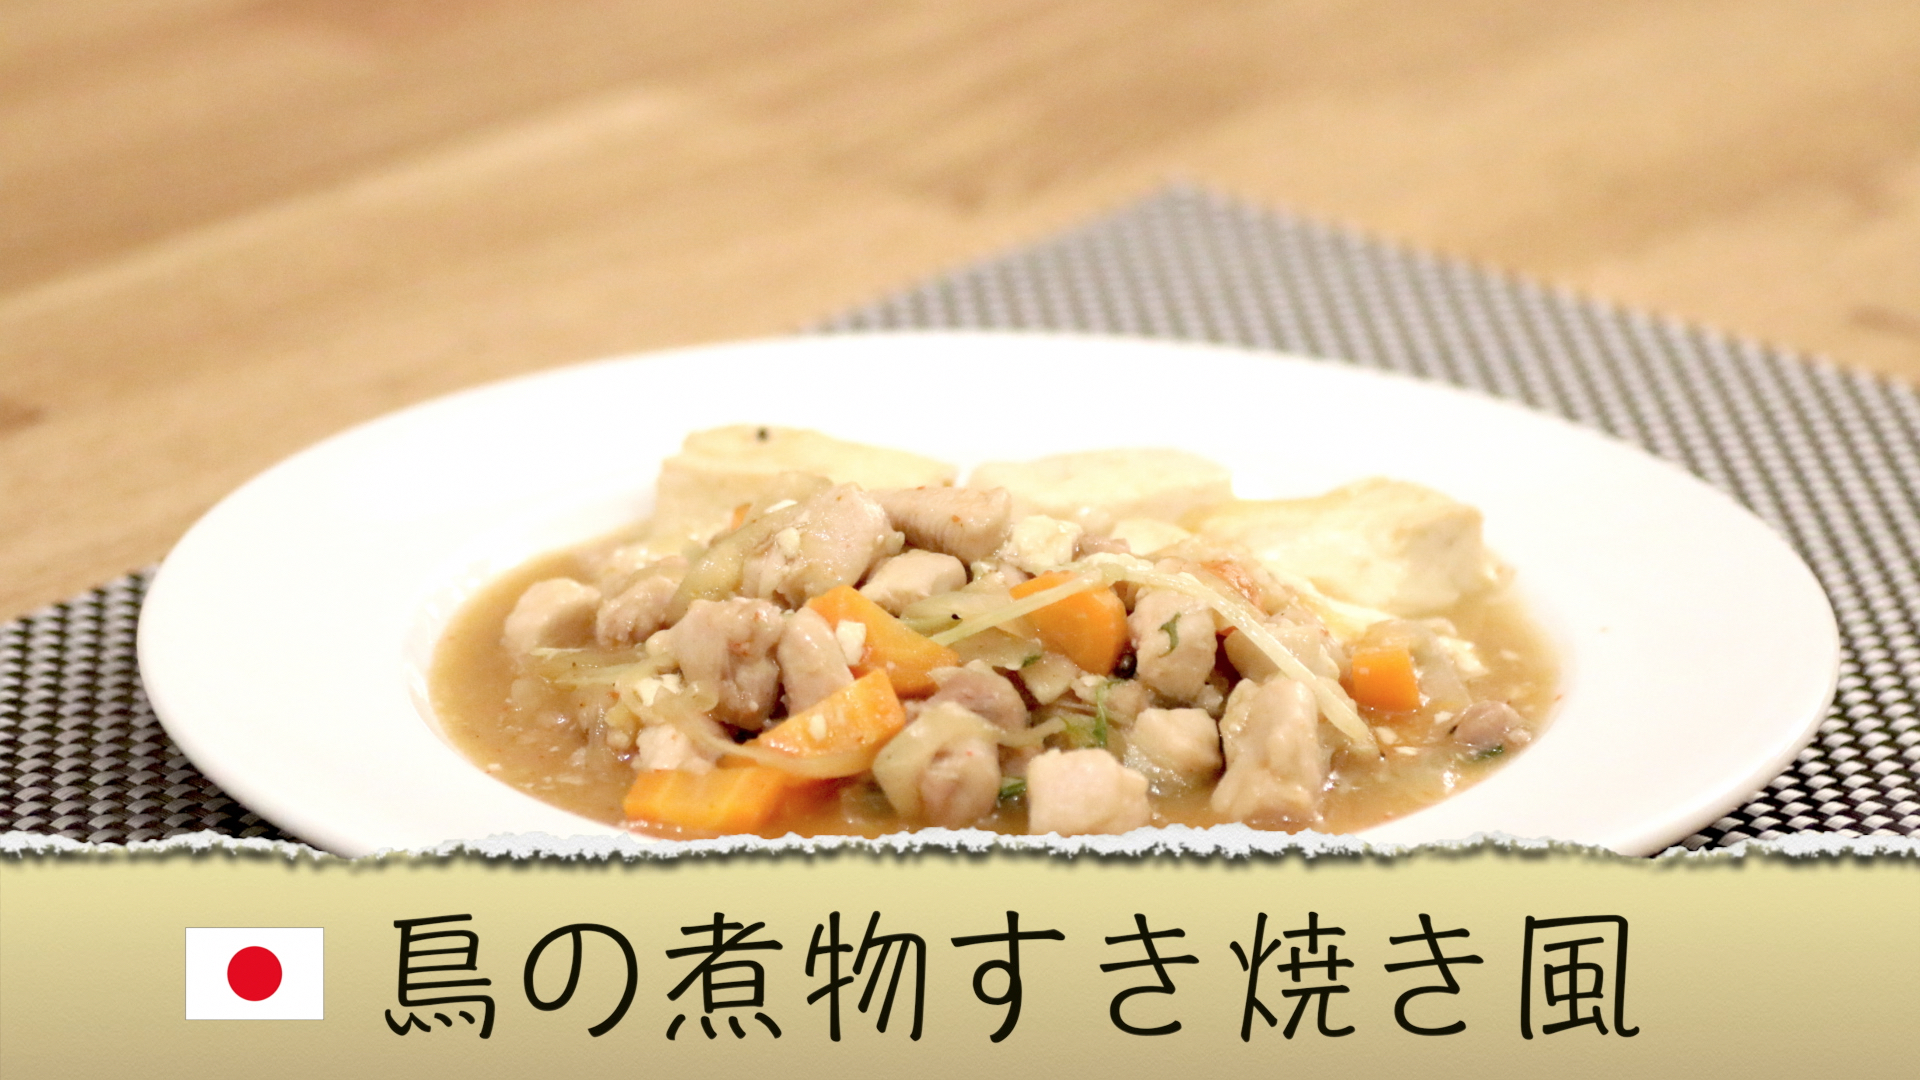 【日本の料理】鳥の煮物 すき焼き風のレシピ